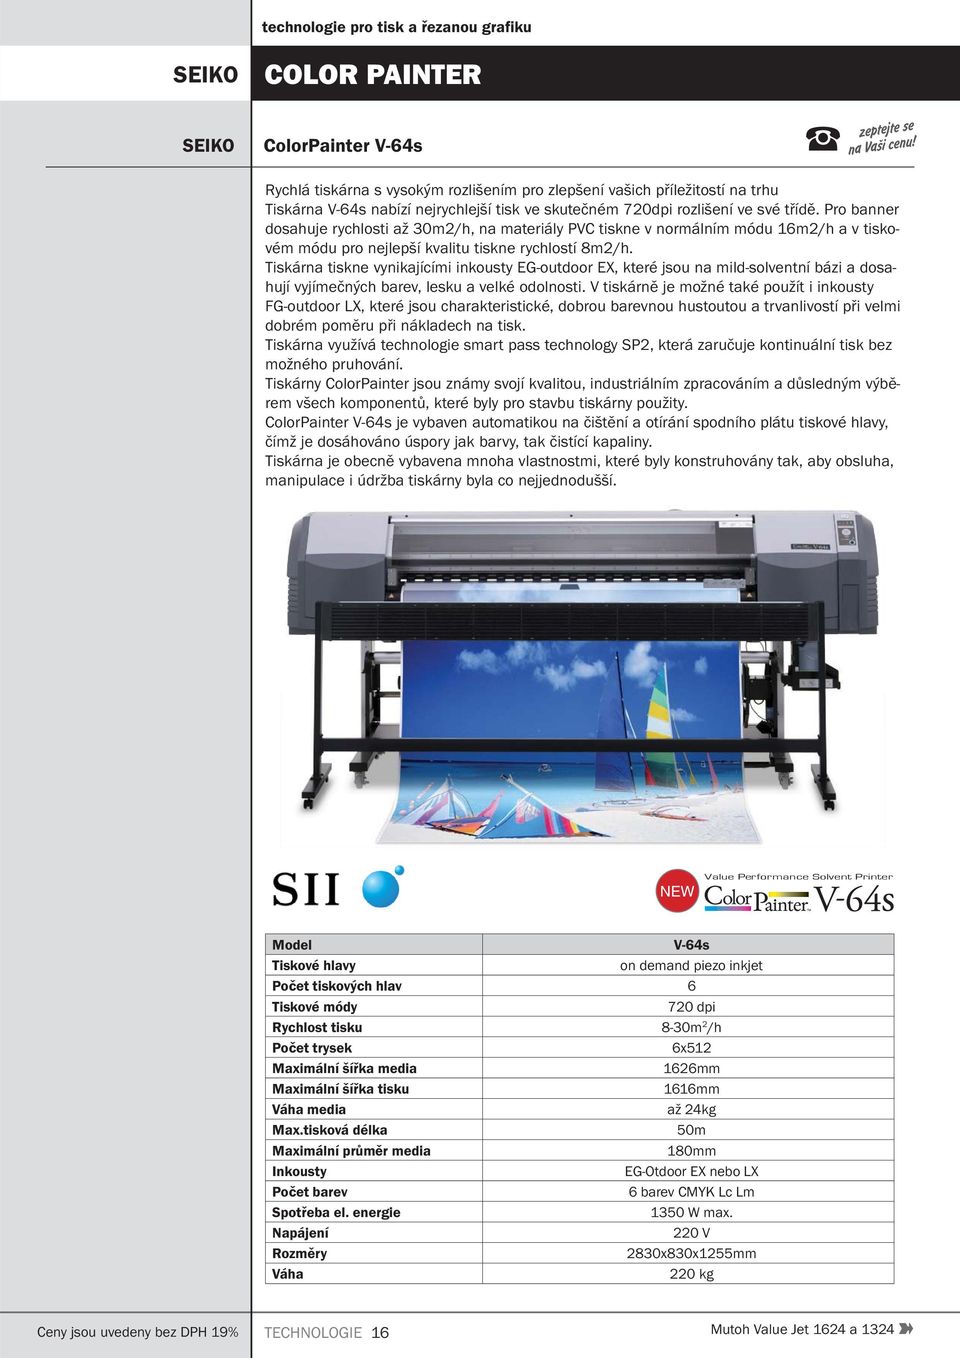 Tiskárna tiskne vynikajícími inkousty EG-outdoor EX, které jsou na mild-solventní bázi a dosahují vyjímečných barev, lesku a velké odolnosti.